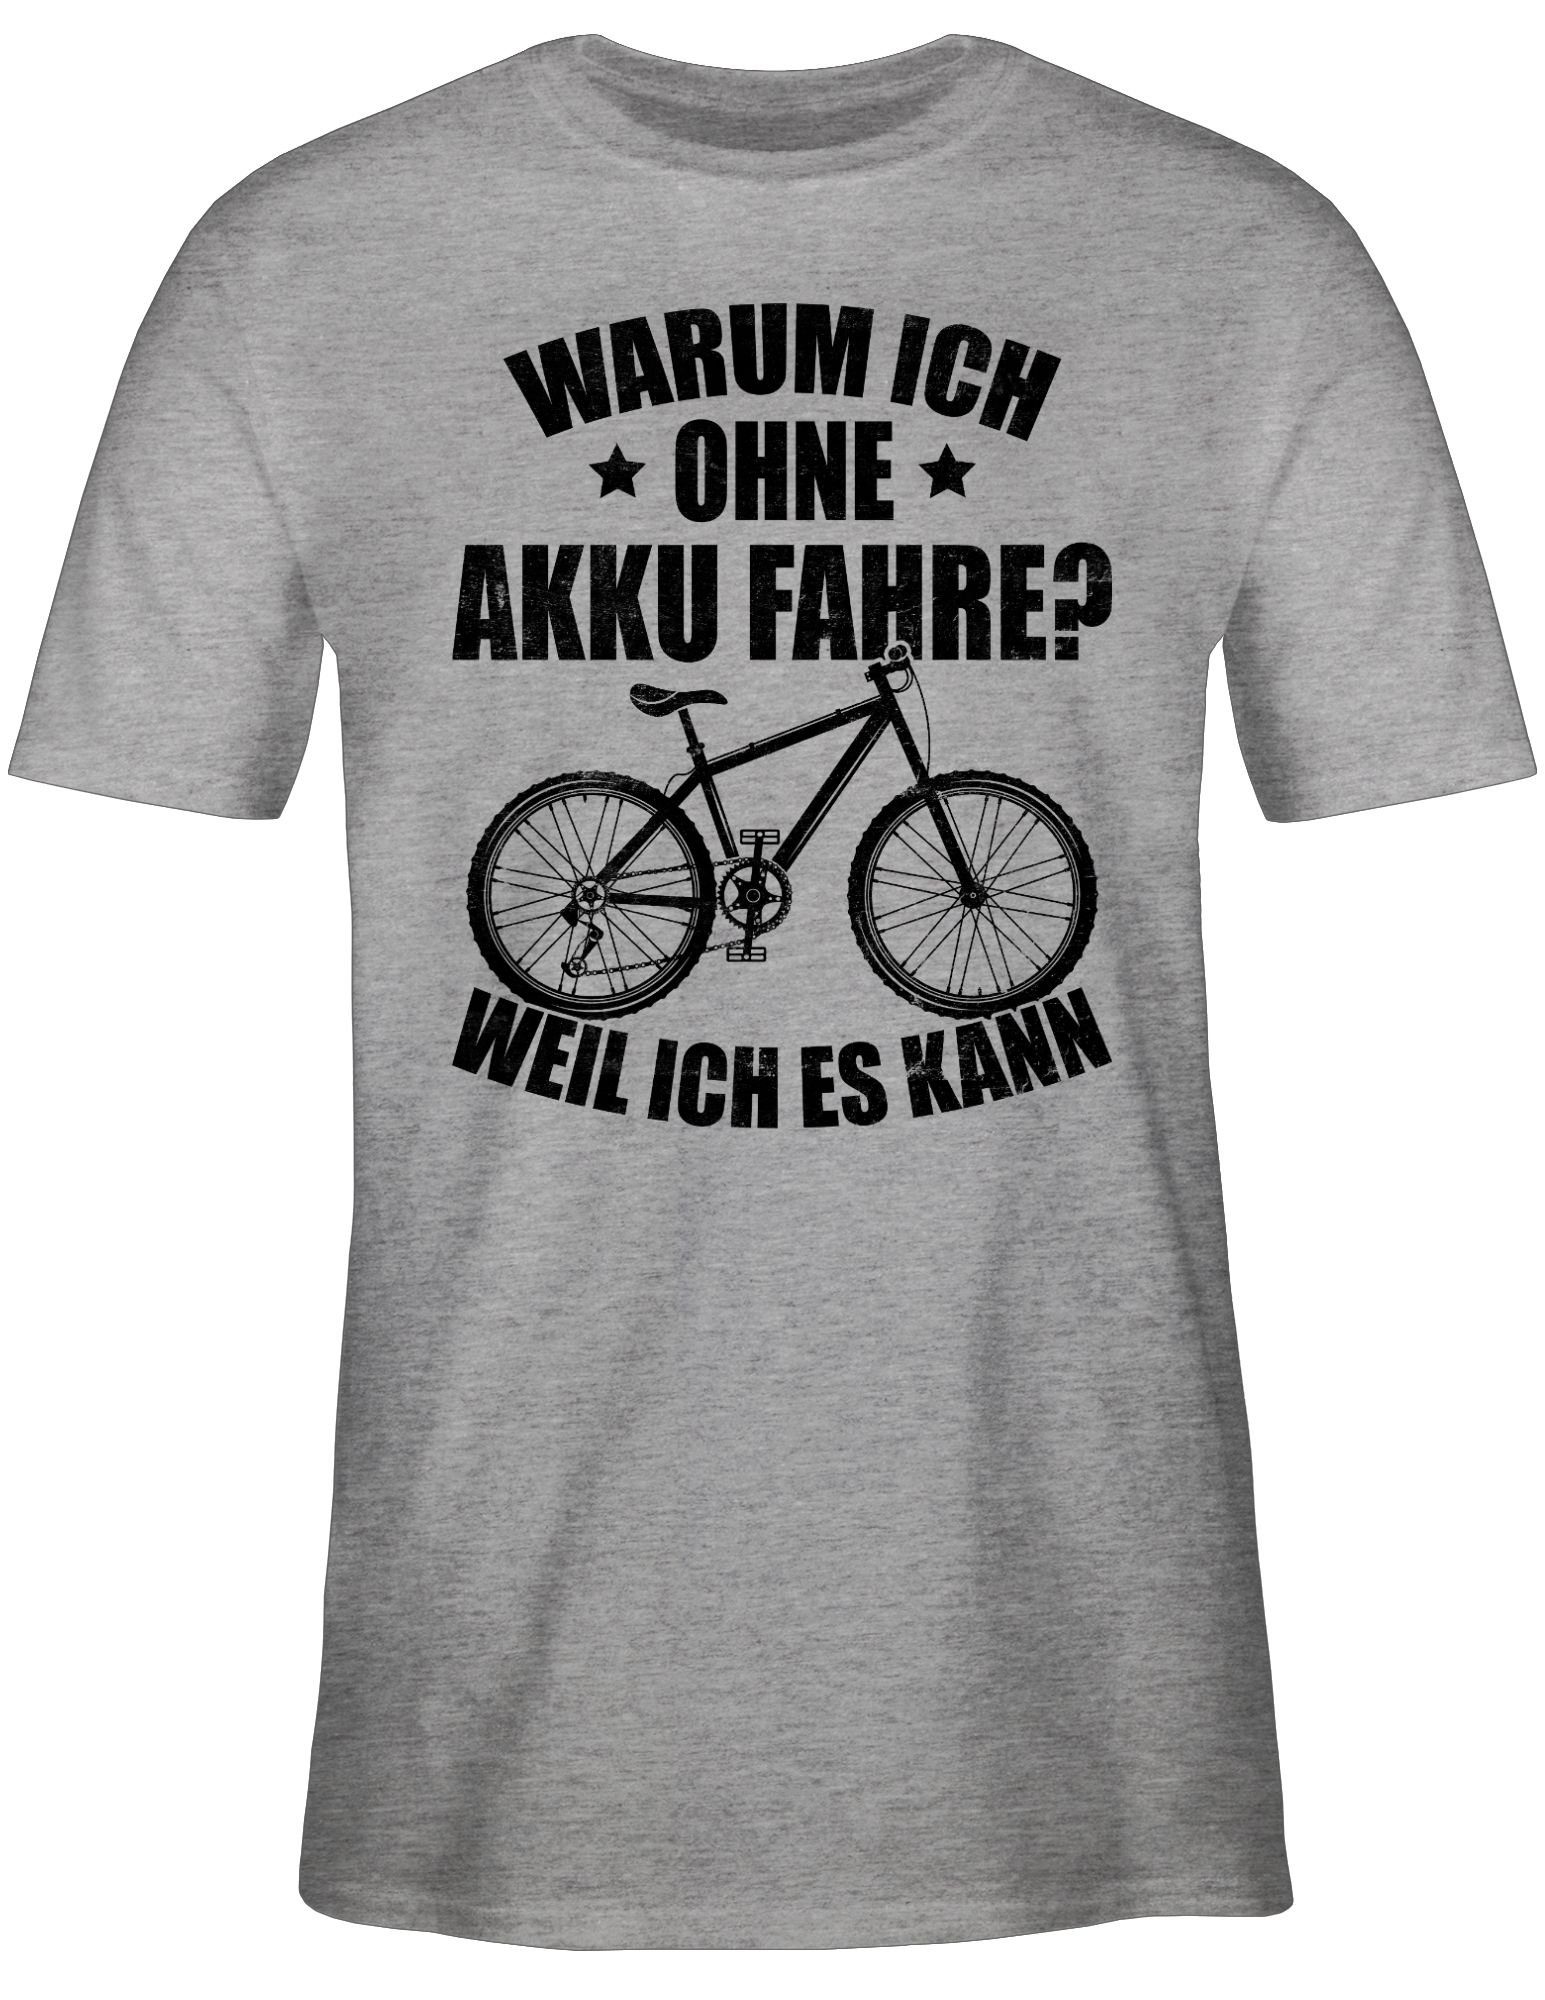 Radsport Grau Akku 01 T-Shirt Warum ich ich - weil - kann schwarz es ohne Fahrrad Shirtracer fahre meliert Bekleidung